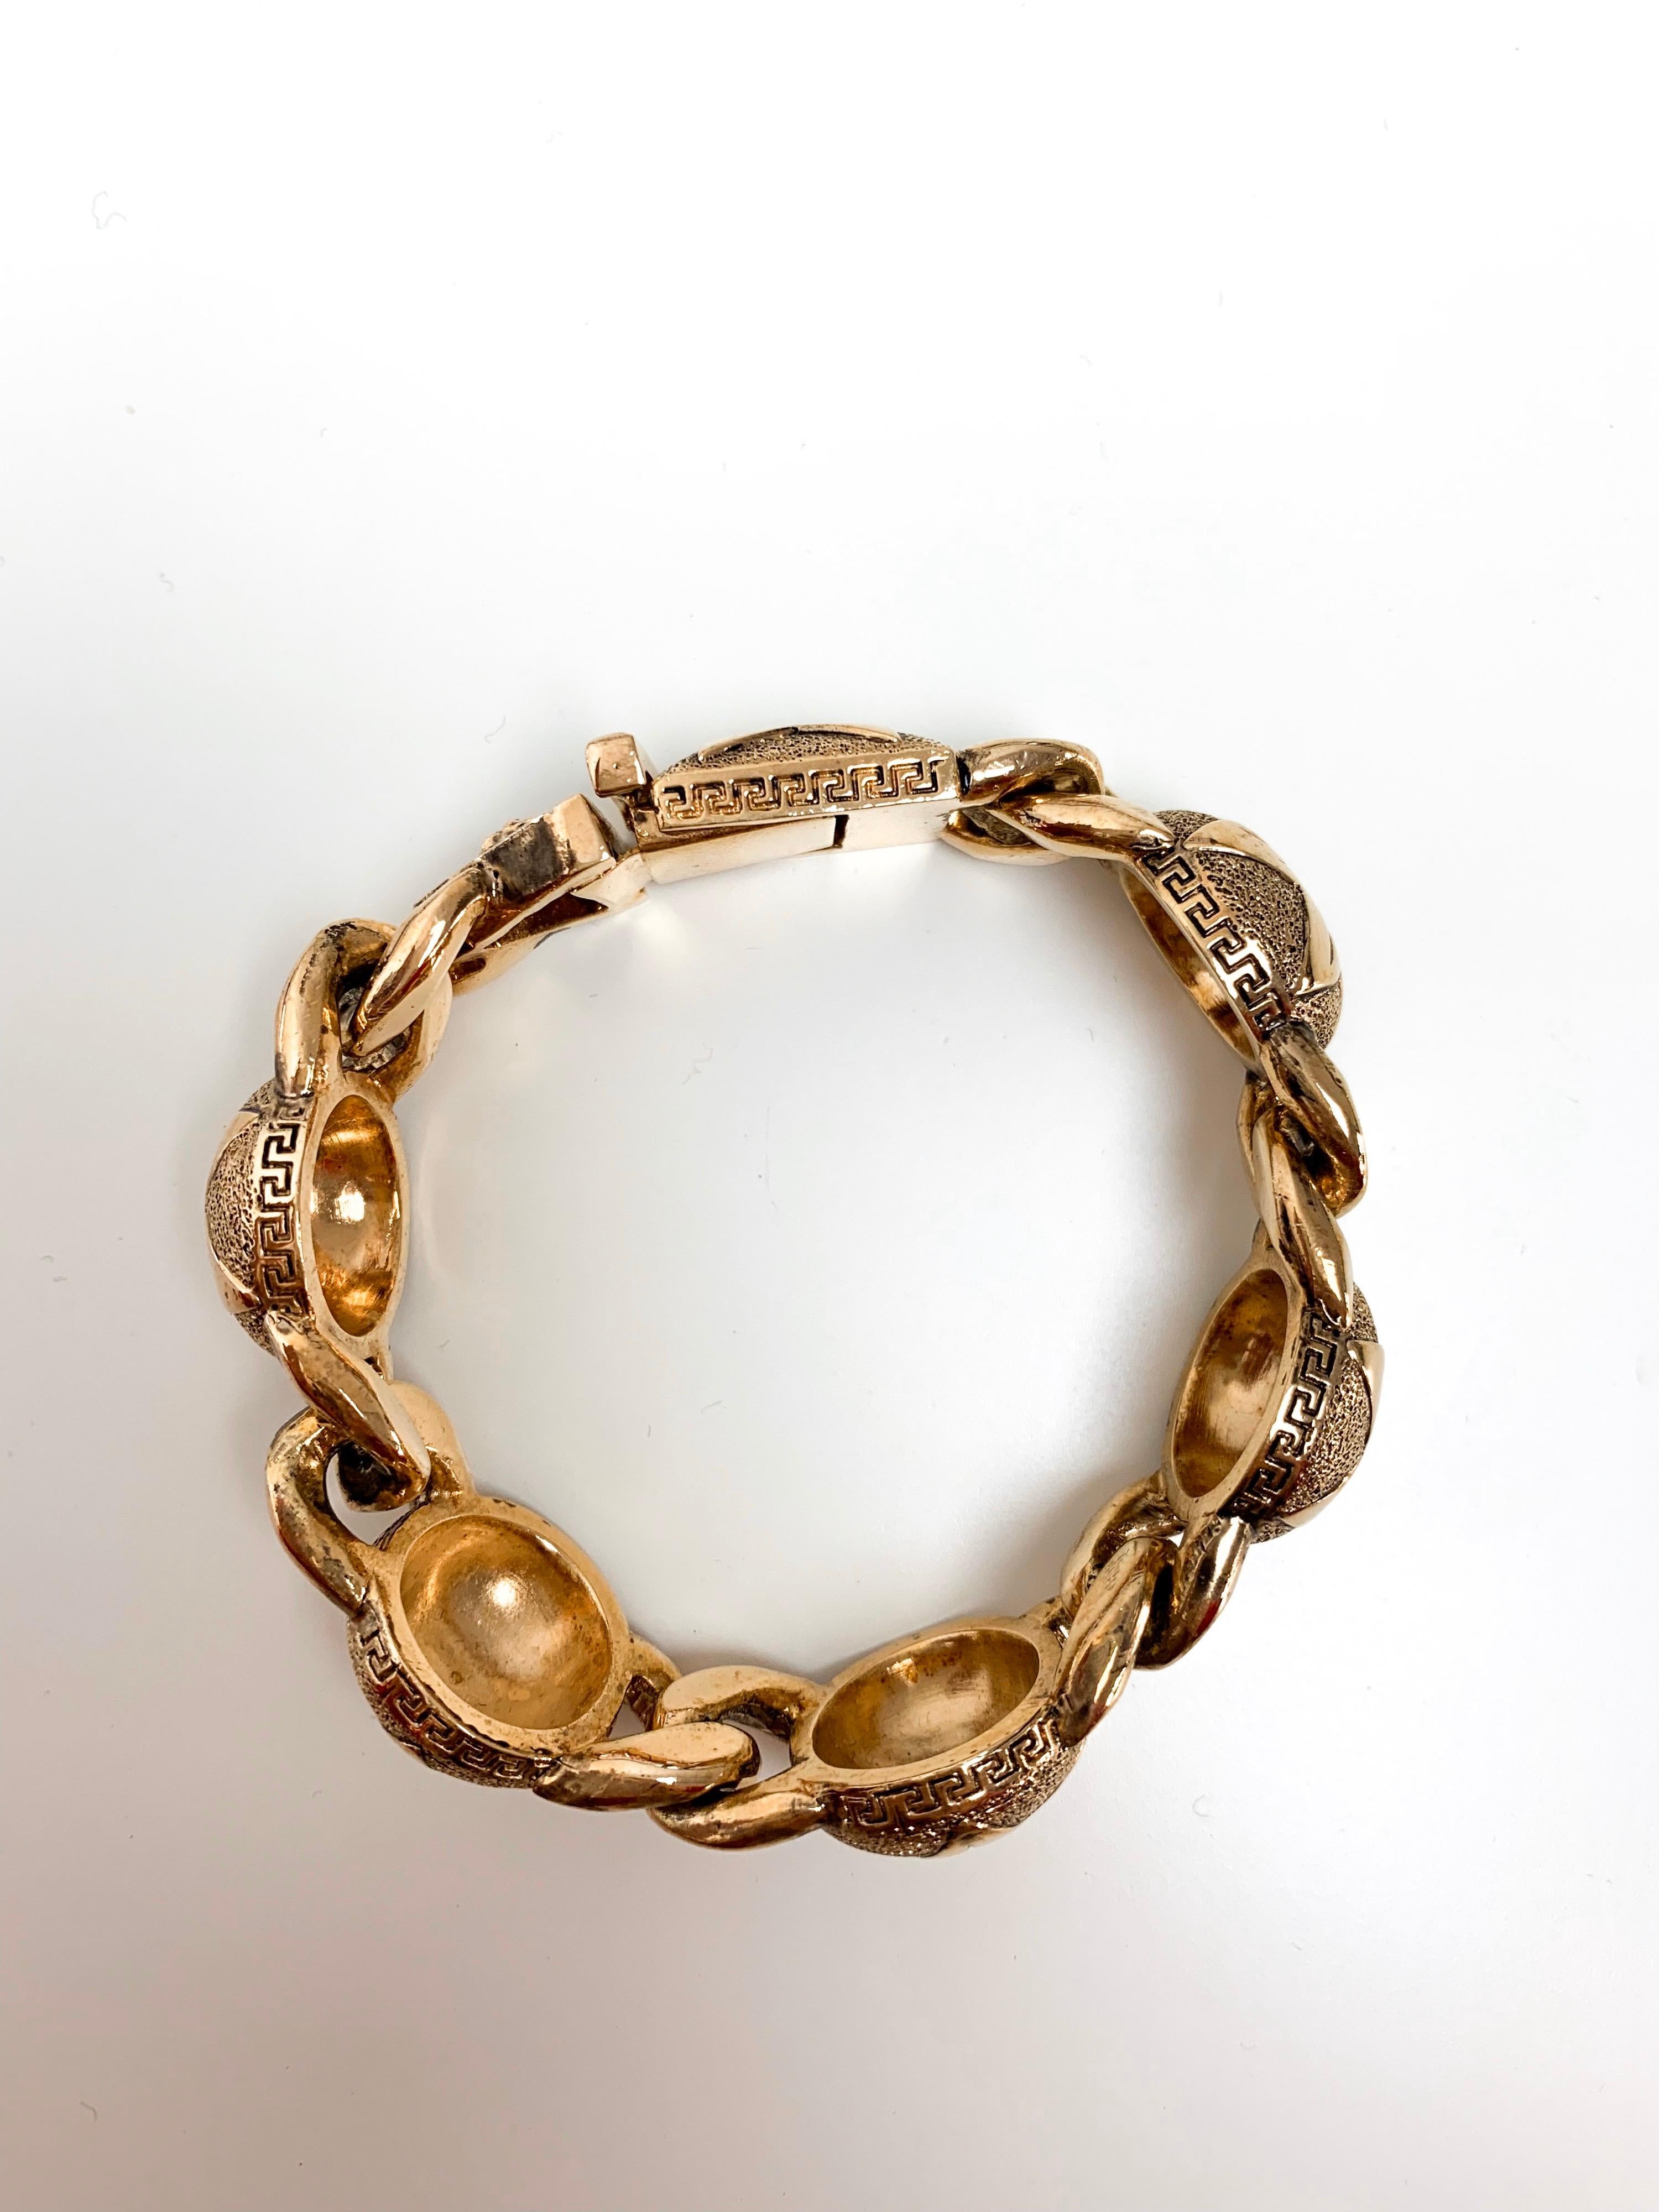 Dieses in Italien gefertigte Gianni Versace Goldarmband zeigt fünf kreisförmige Motive mit eingraviertem Sternenemblem, die mit der traditionellen Kordel verbunden sind. Mit dem griechischen Kachelsymbol verziert, spiegelt dieses Armband die 90er